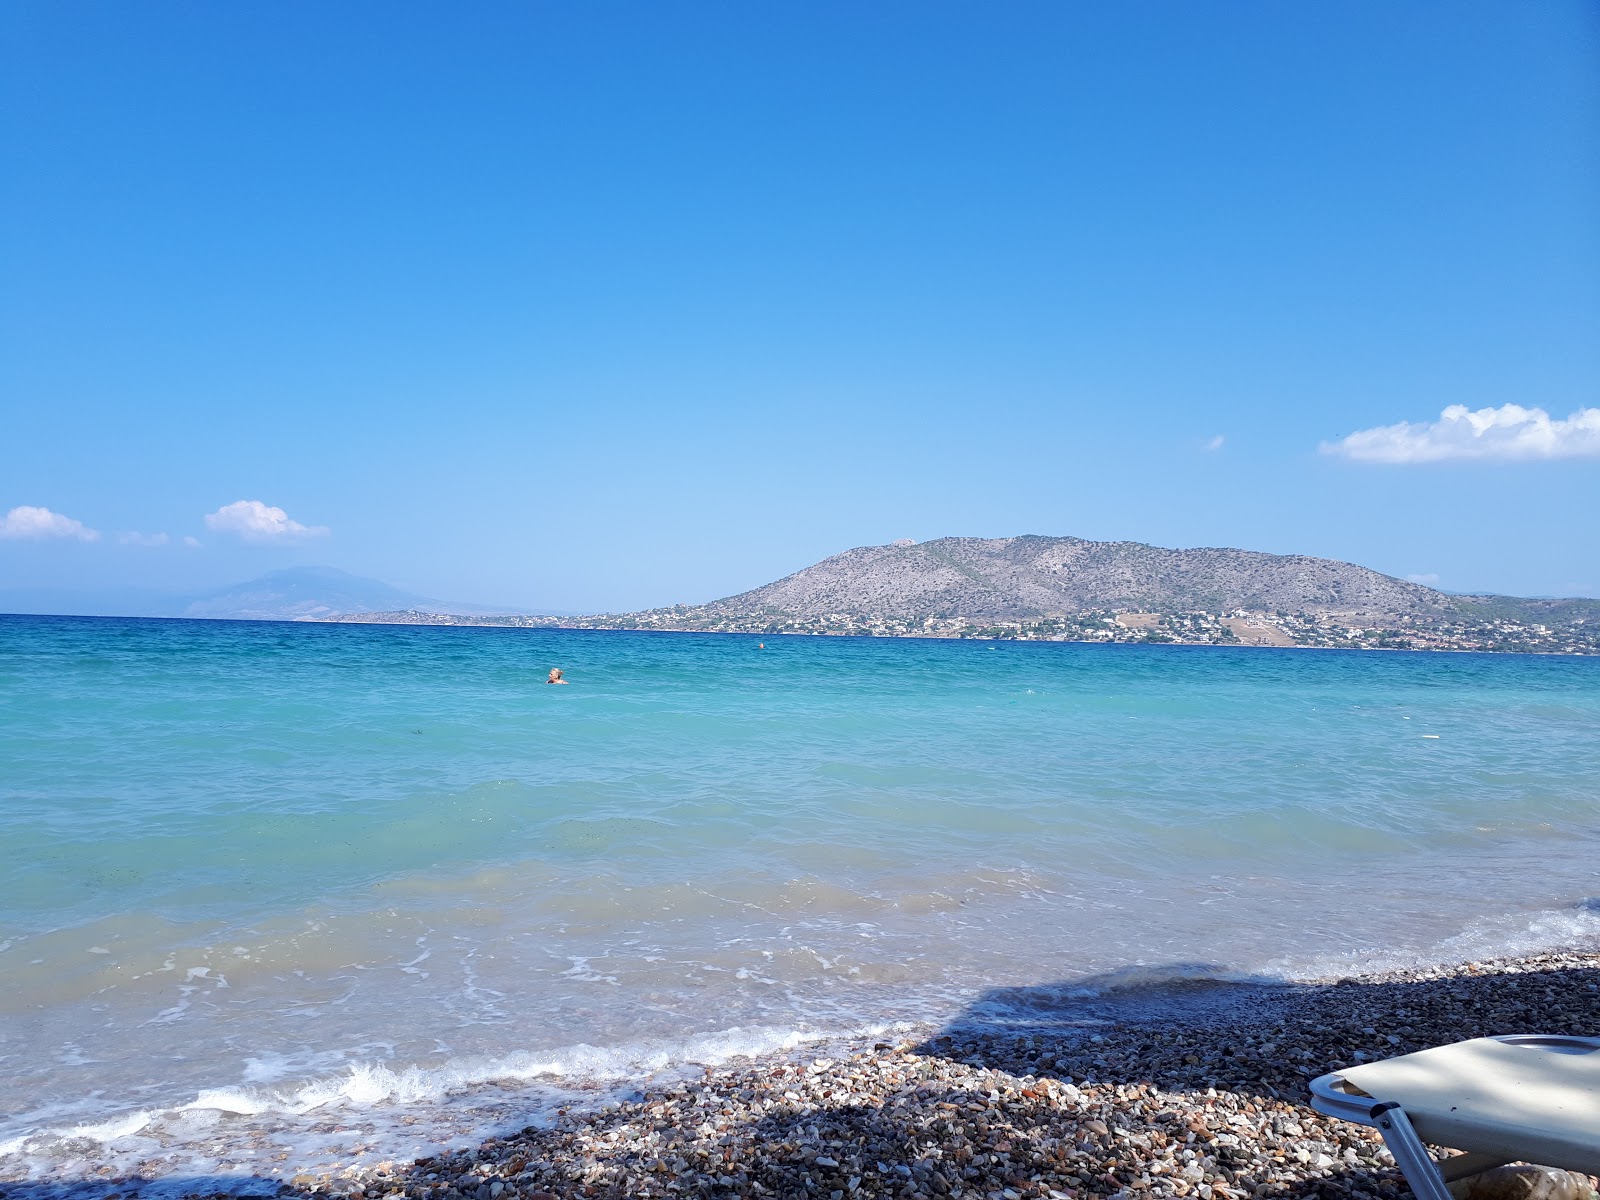 Leof. Eanteiou beach'in fotoğrafı hafif ince çakıl taş yüzey ile